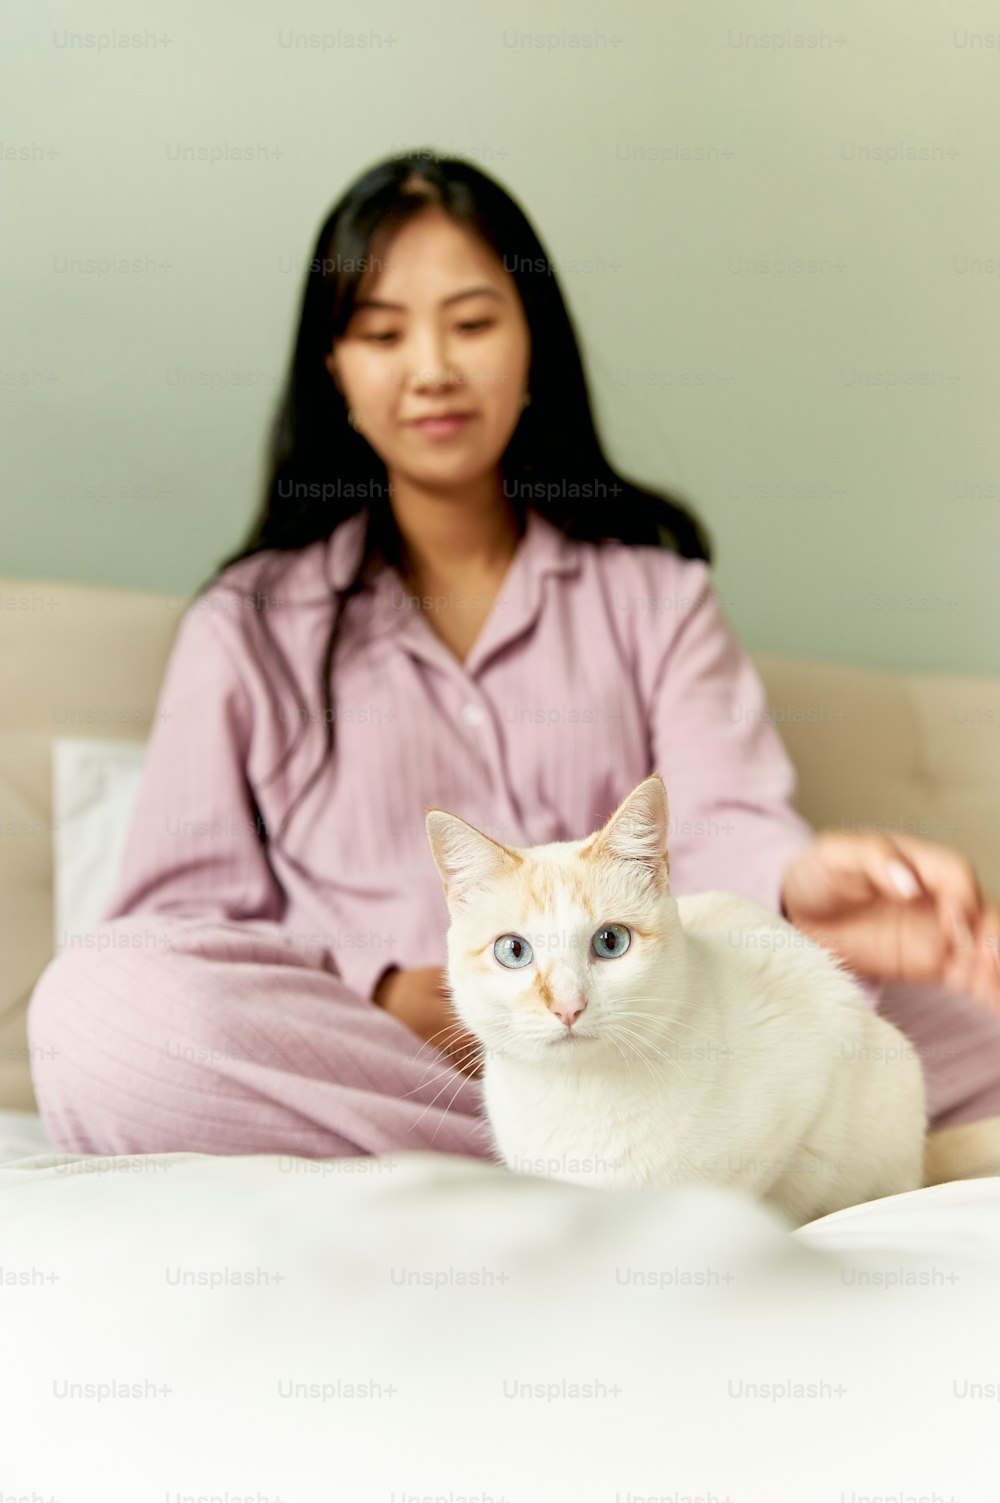 Eine Frau, die mit einer weißen Katze auf einem Bett sitzt